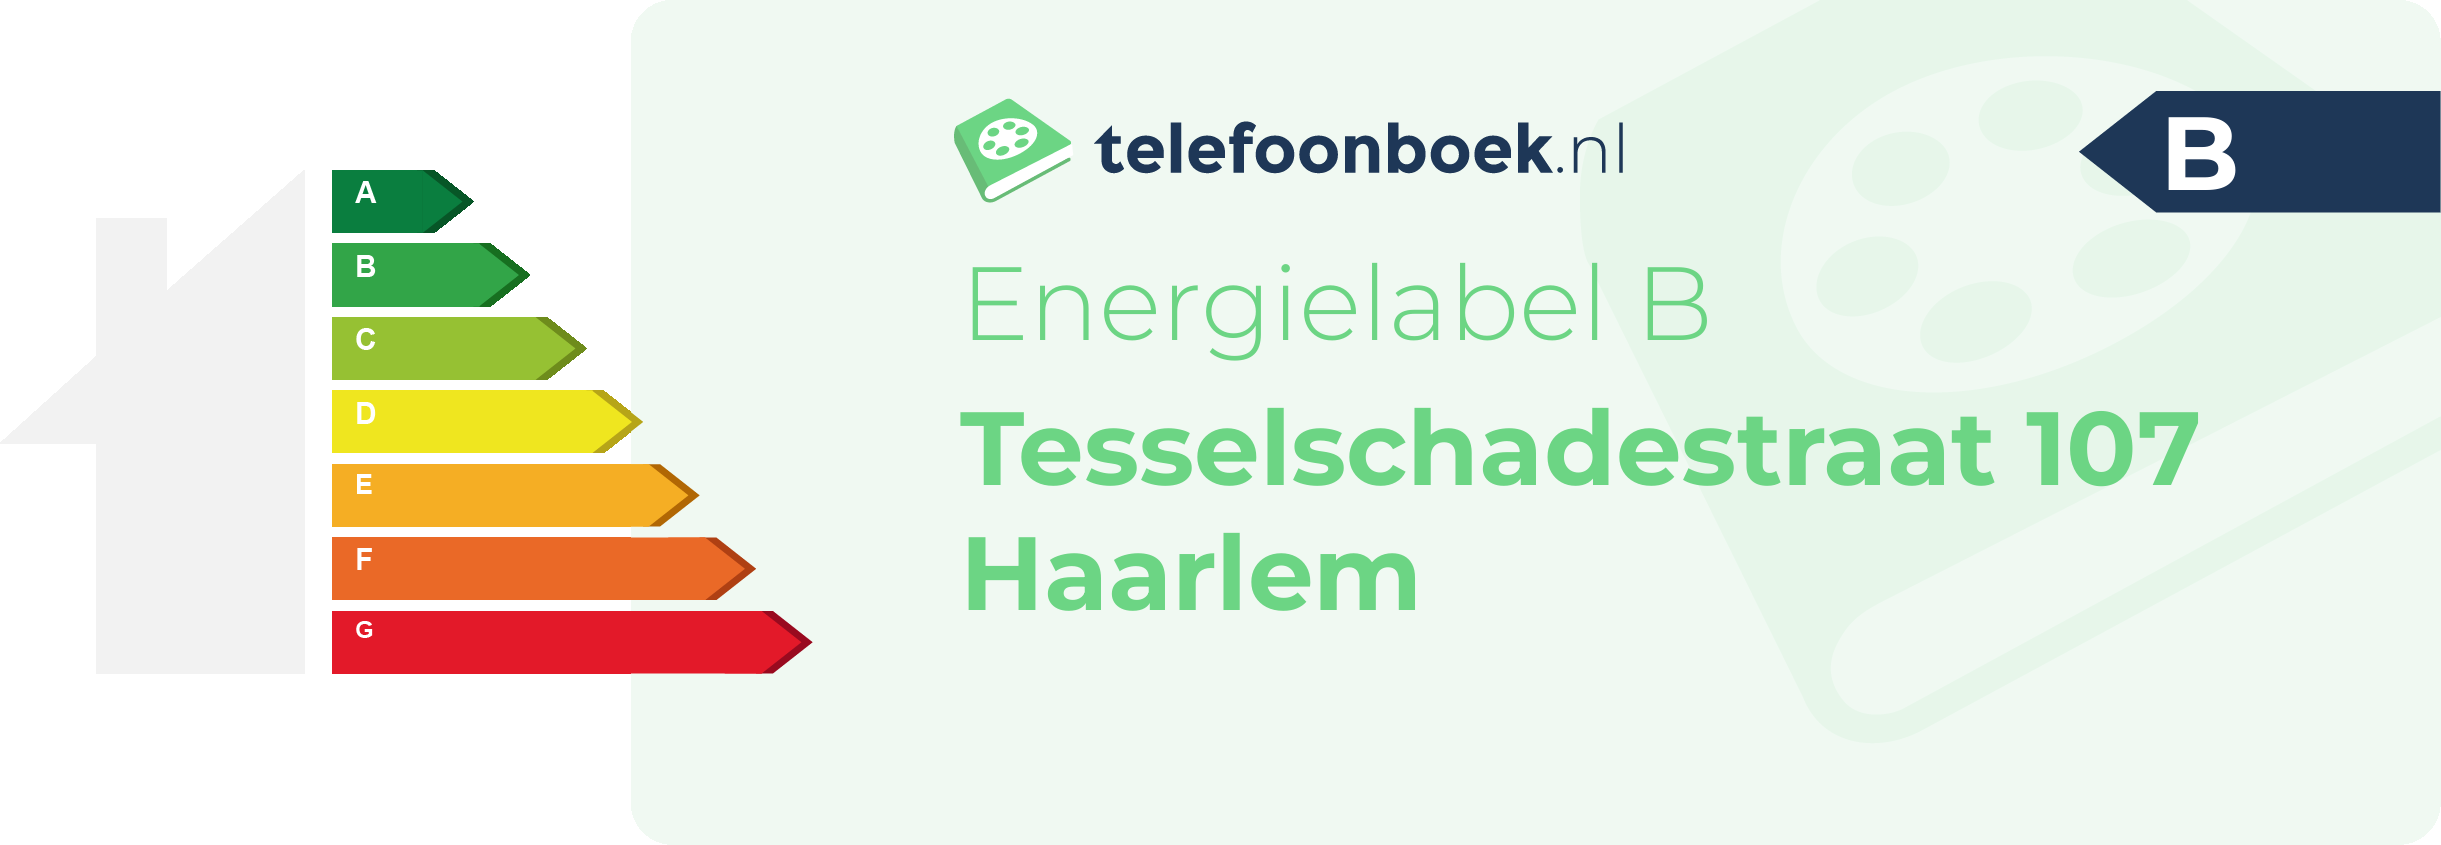 Energielabel Tesselschadestraat 107 Haarlem